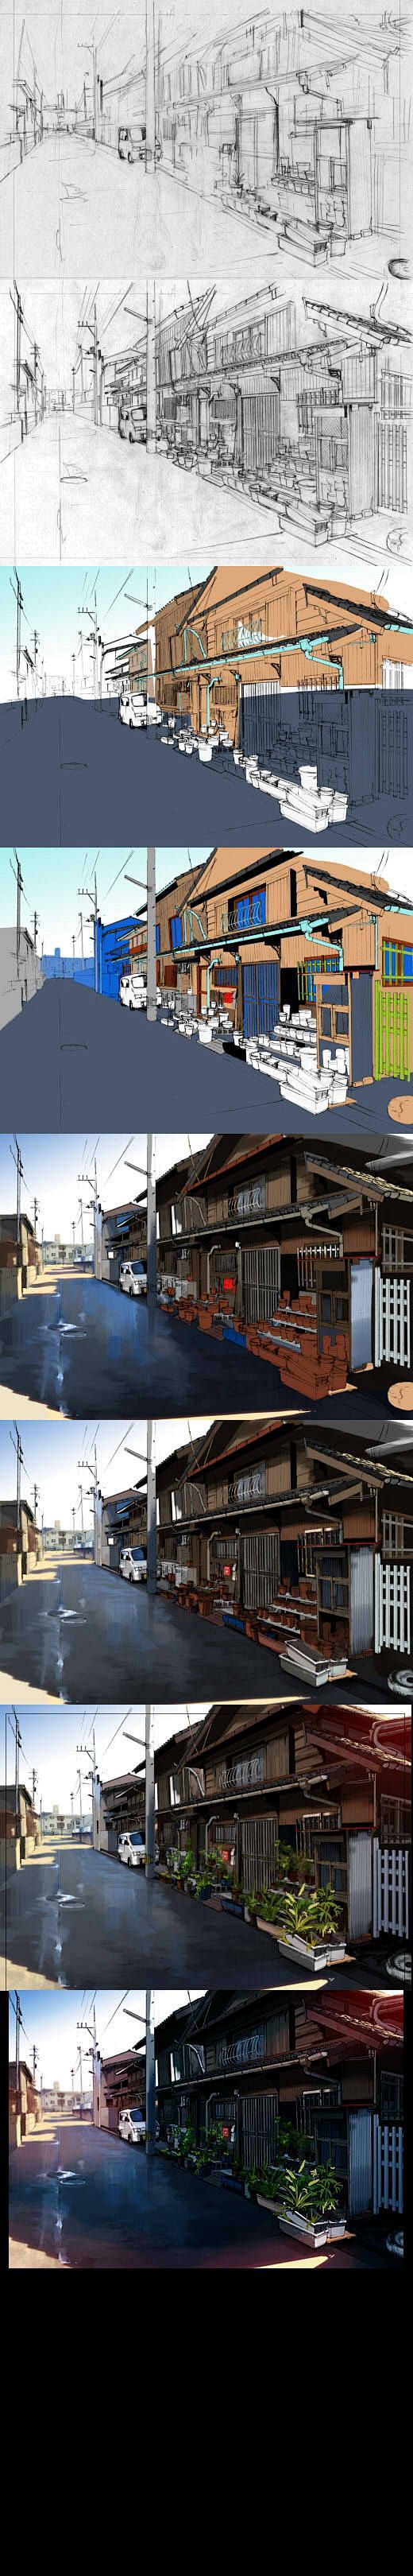 日本乡村场景绘制过程-FlyT漫画教程: